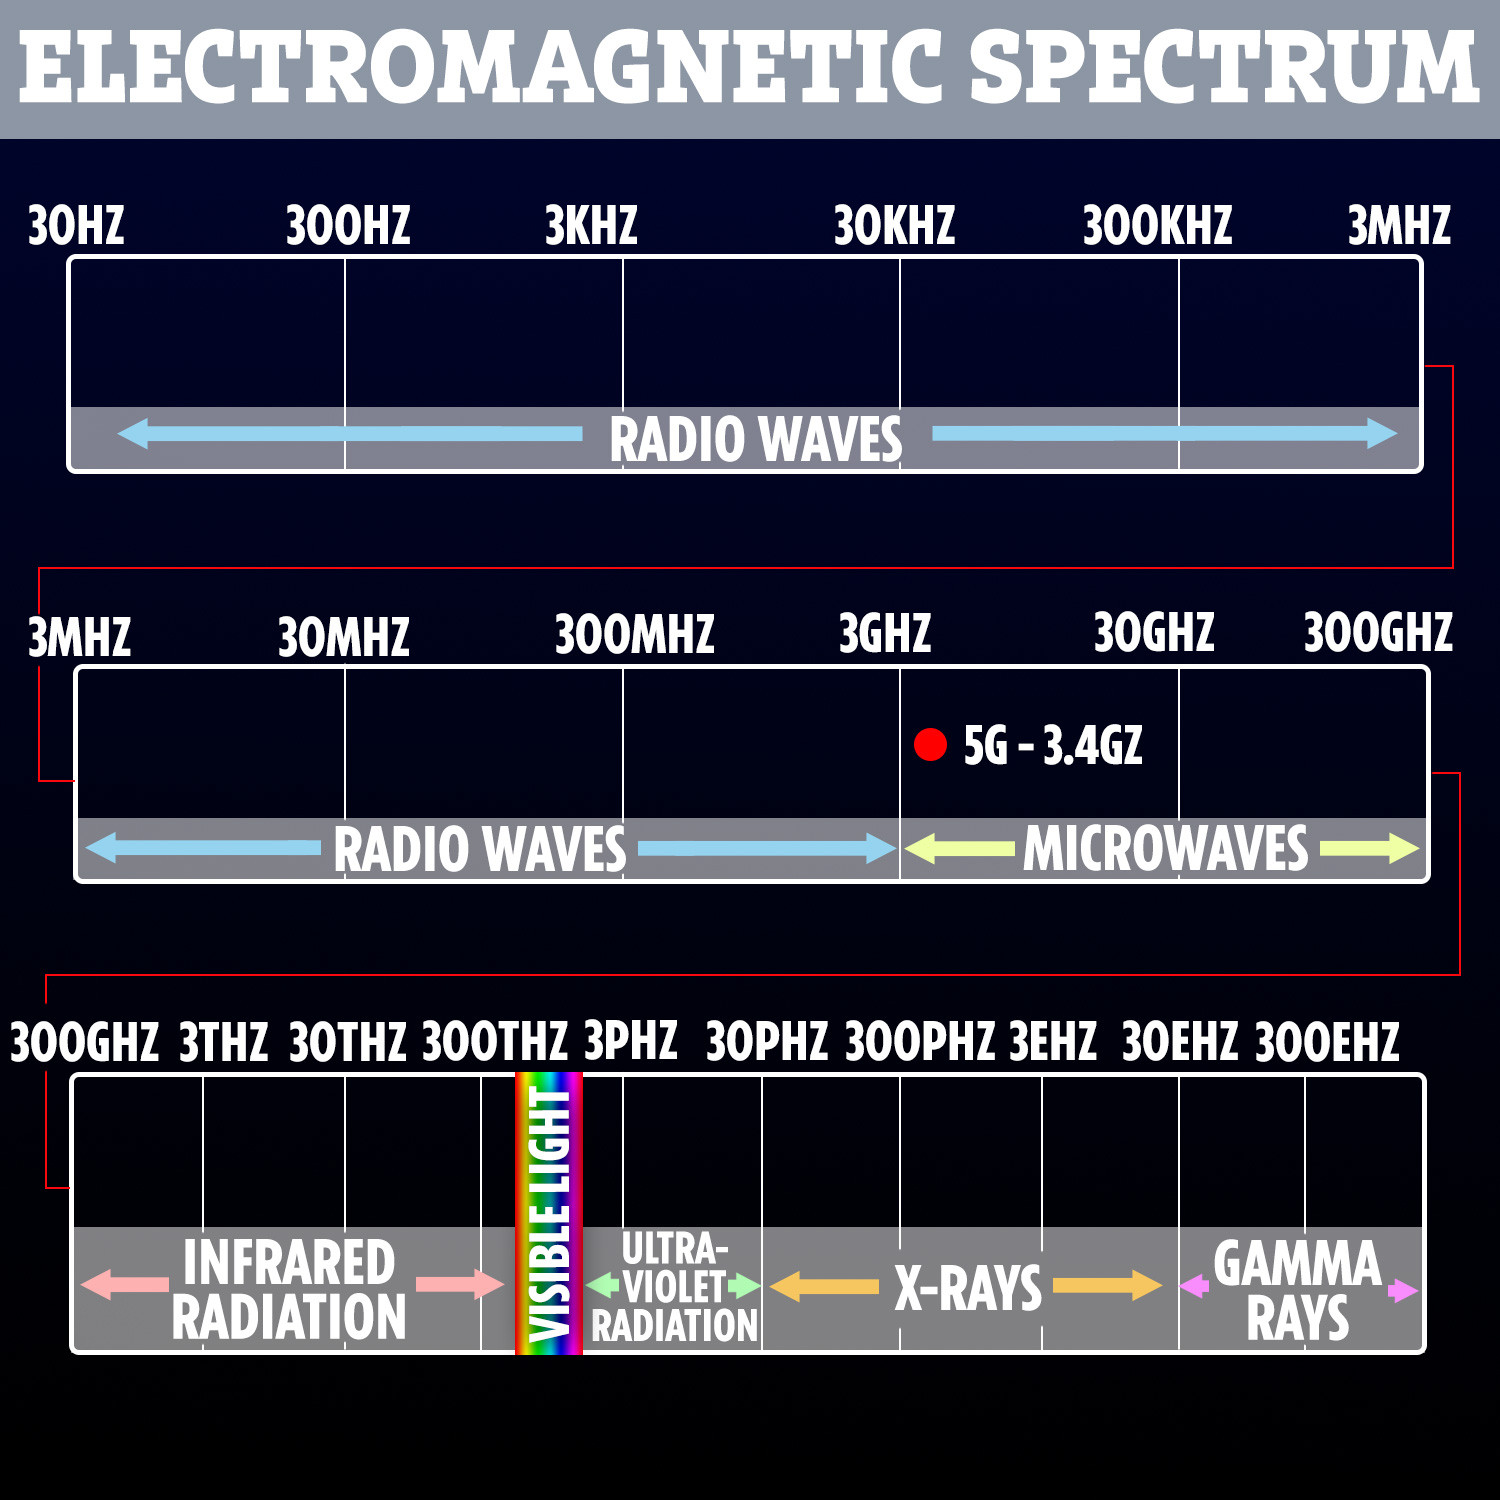  5G adalah bentuk radiasi frekuensi sangat rendah - jauh di bawah cahaya tampak dan inframerah